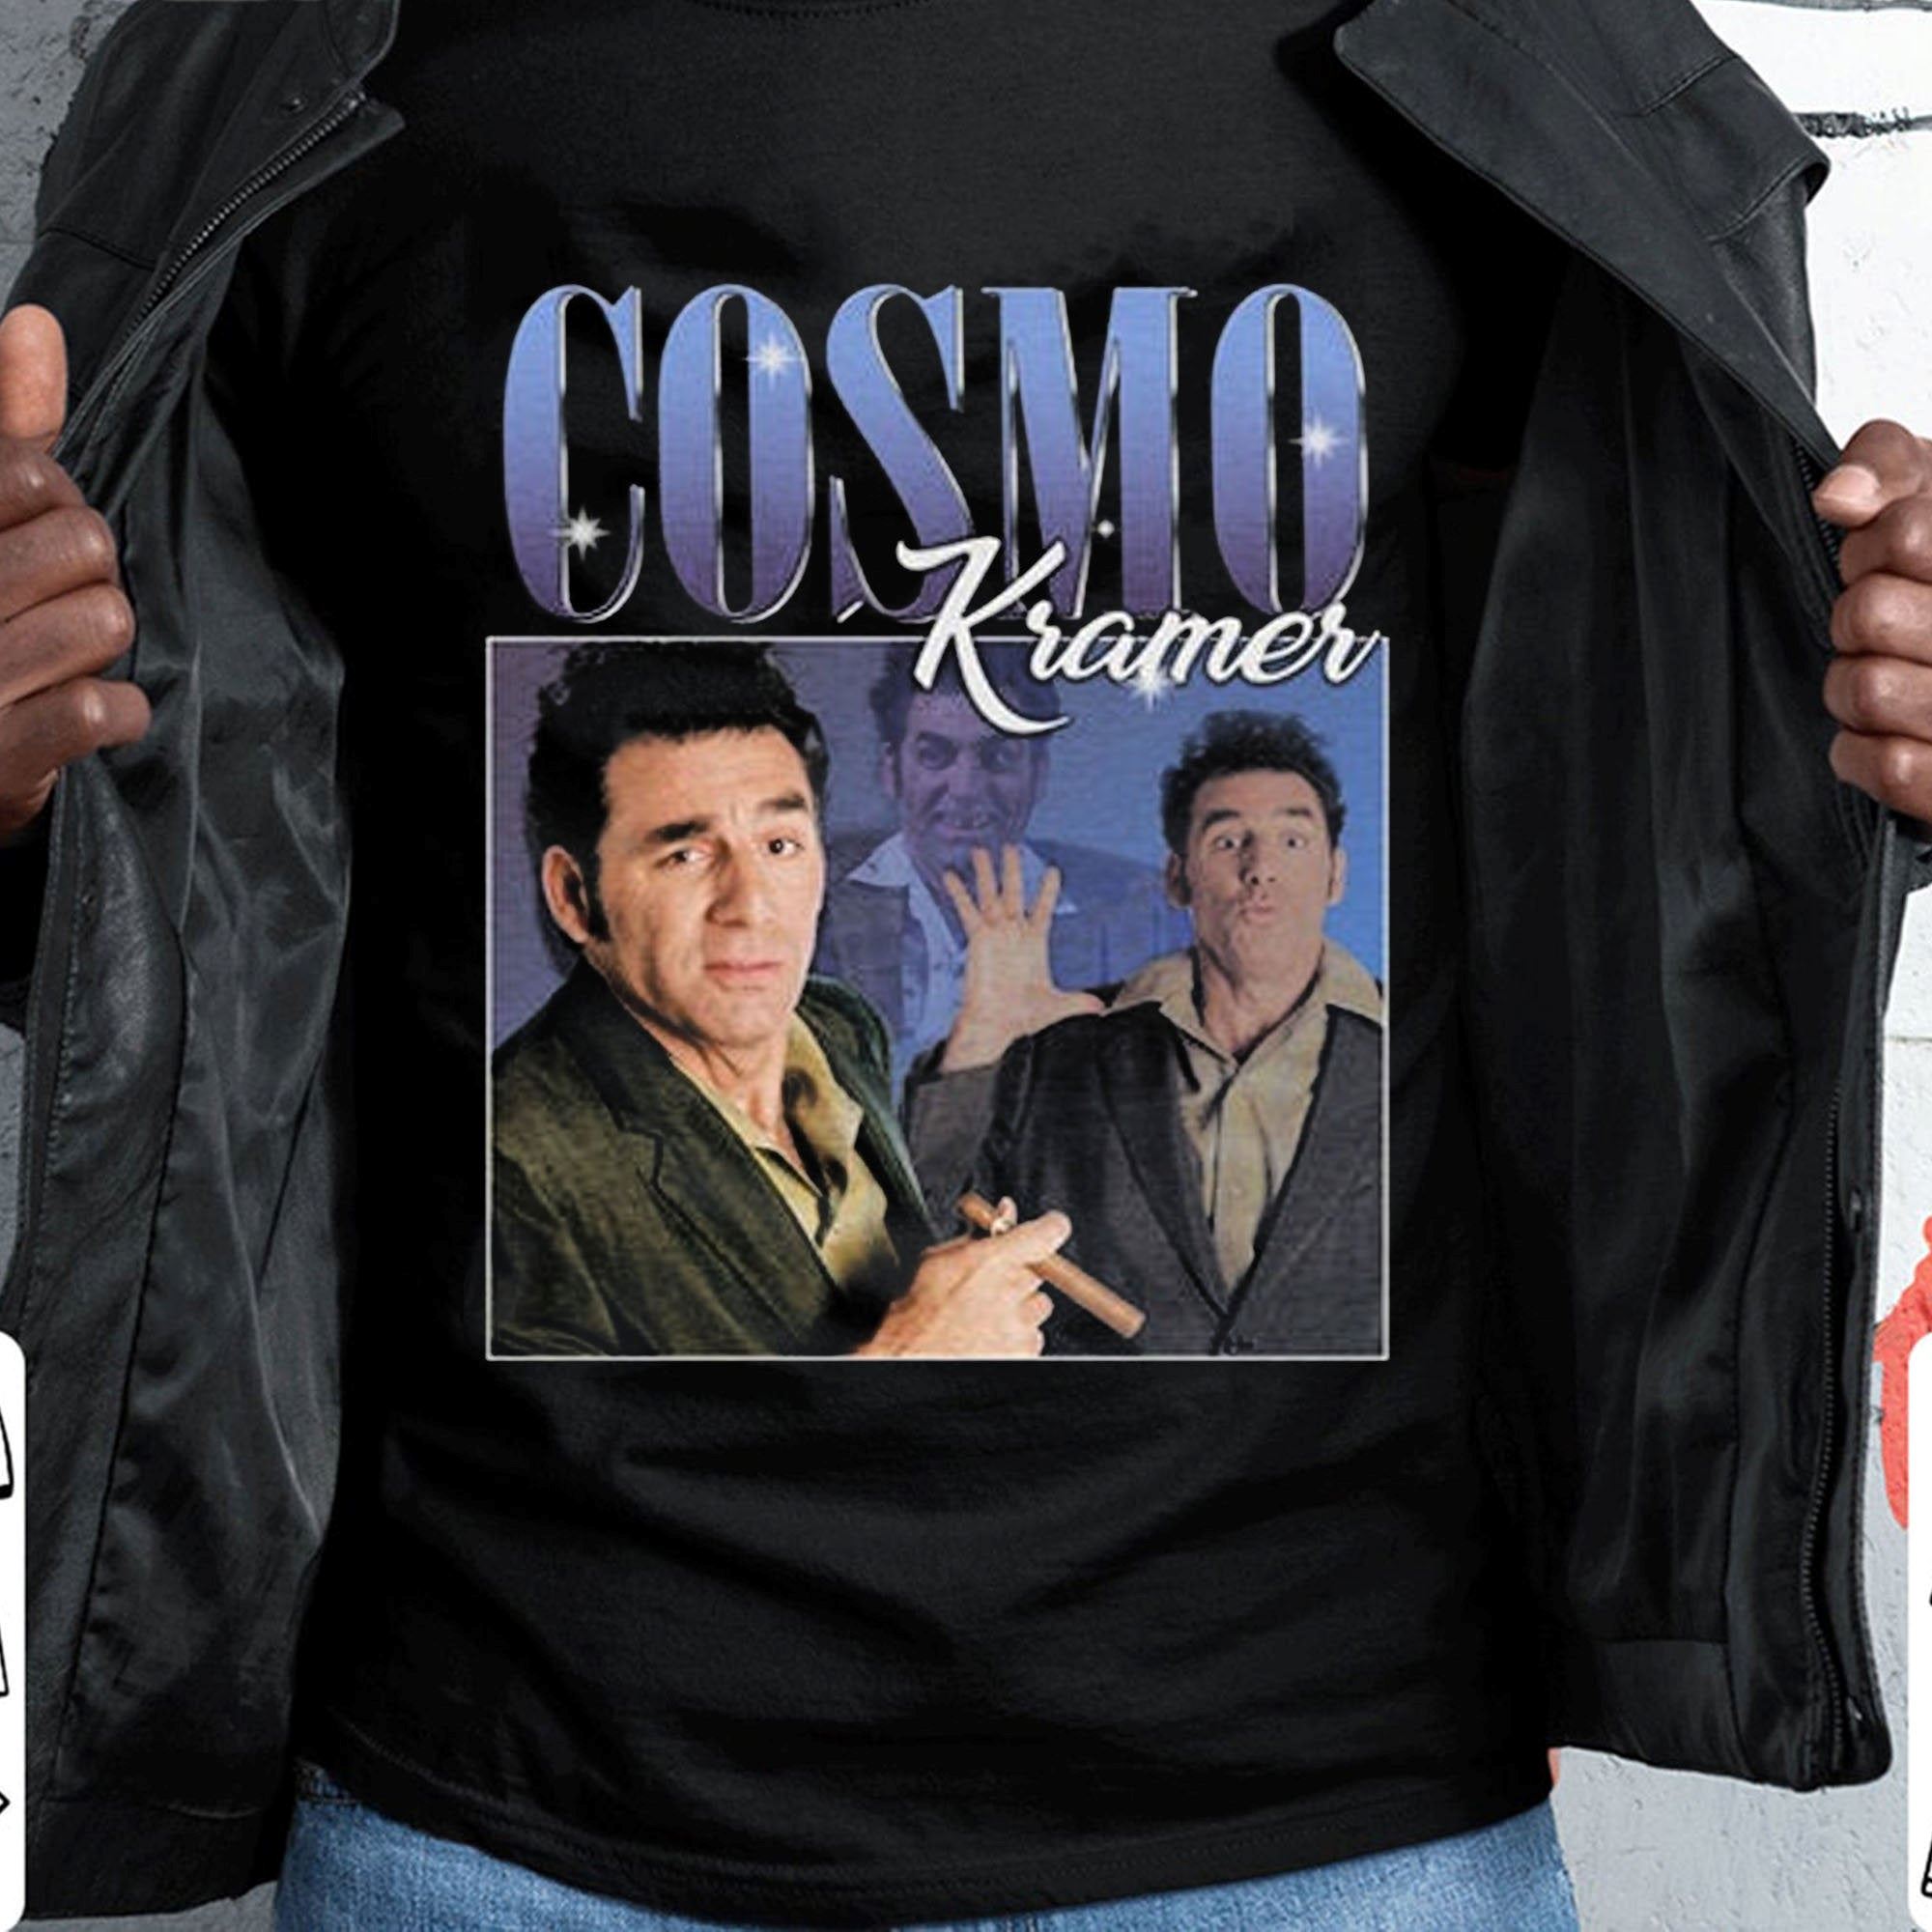 90s Vintage Cosmo Kramer Seinfeld Tv Series T Shirt Gift Tee For Men Women Unisex T-shirt